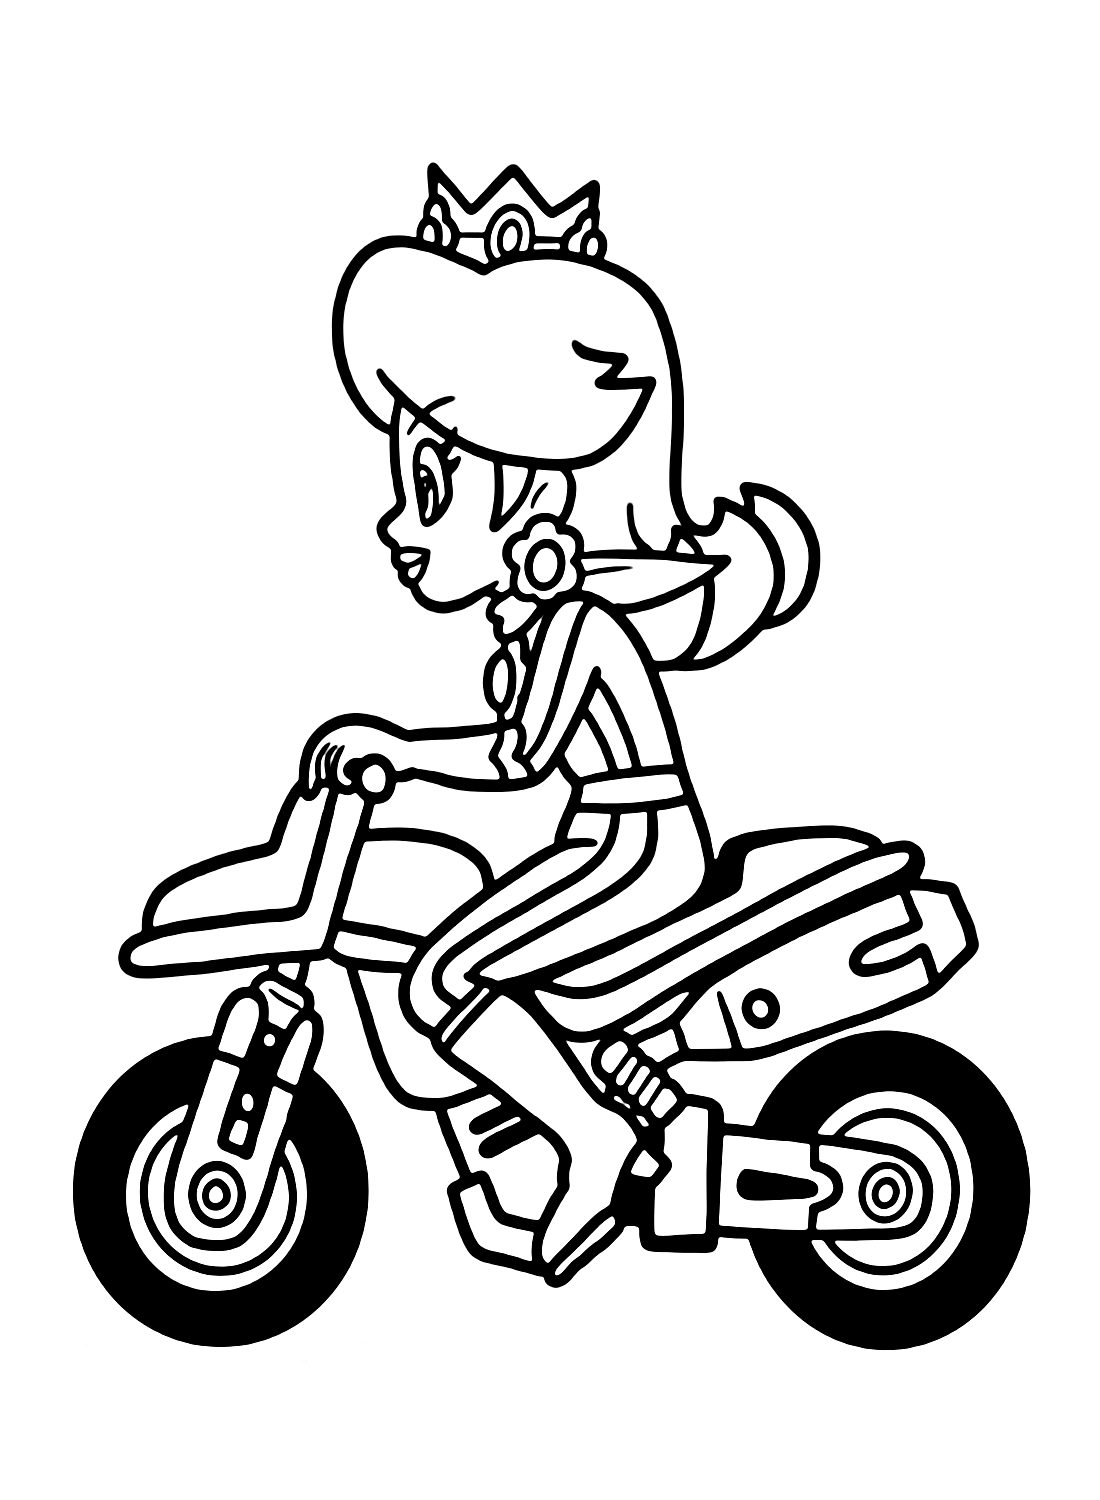 La genial princesa Daisy de Mario Kart